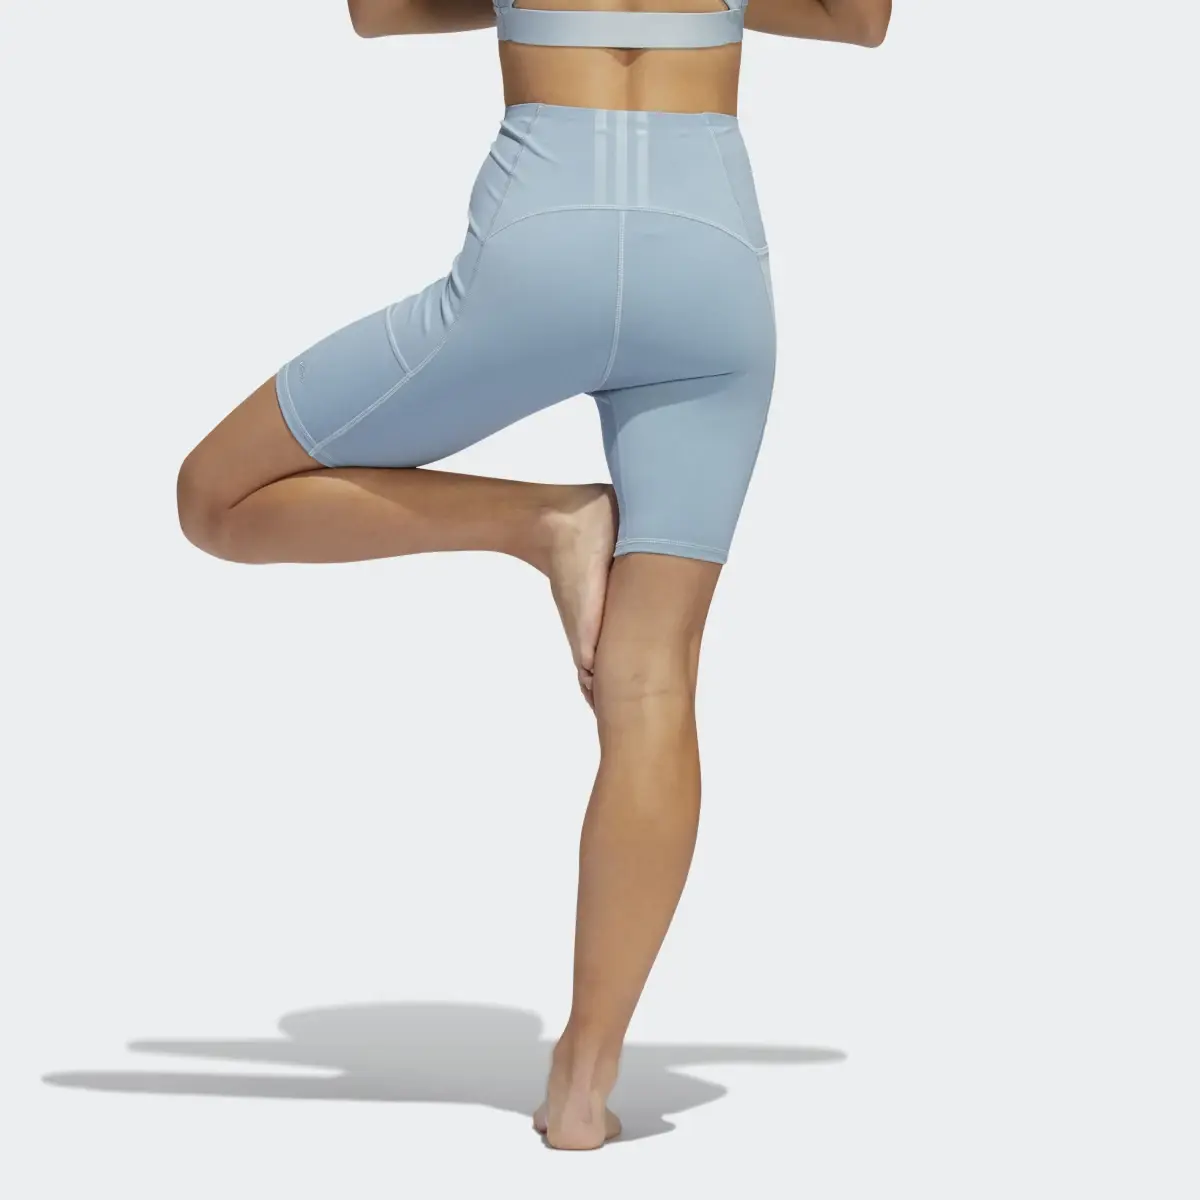 Adidas Calções Studio Yoga 4 Elements adidas. 2